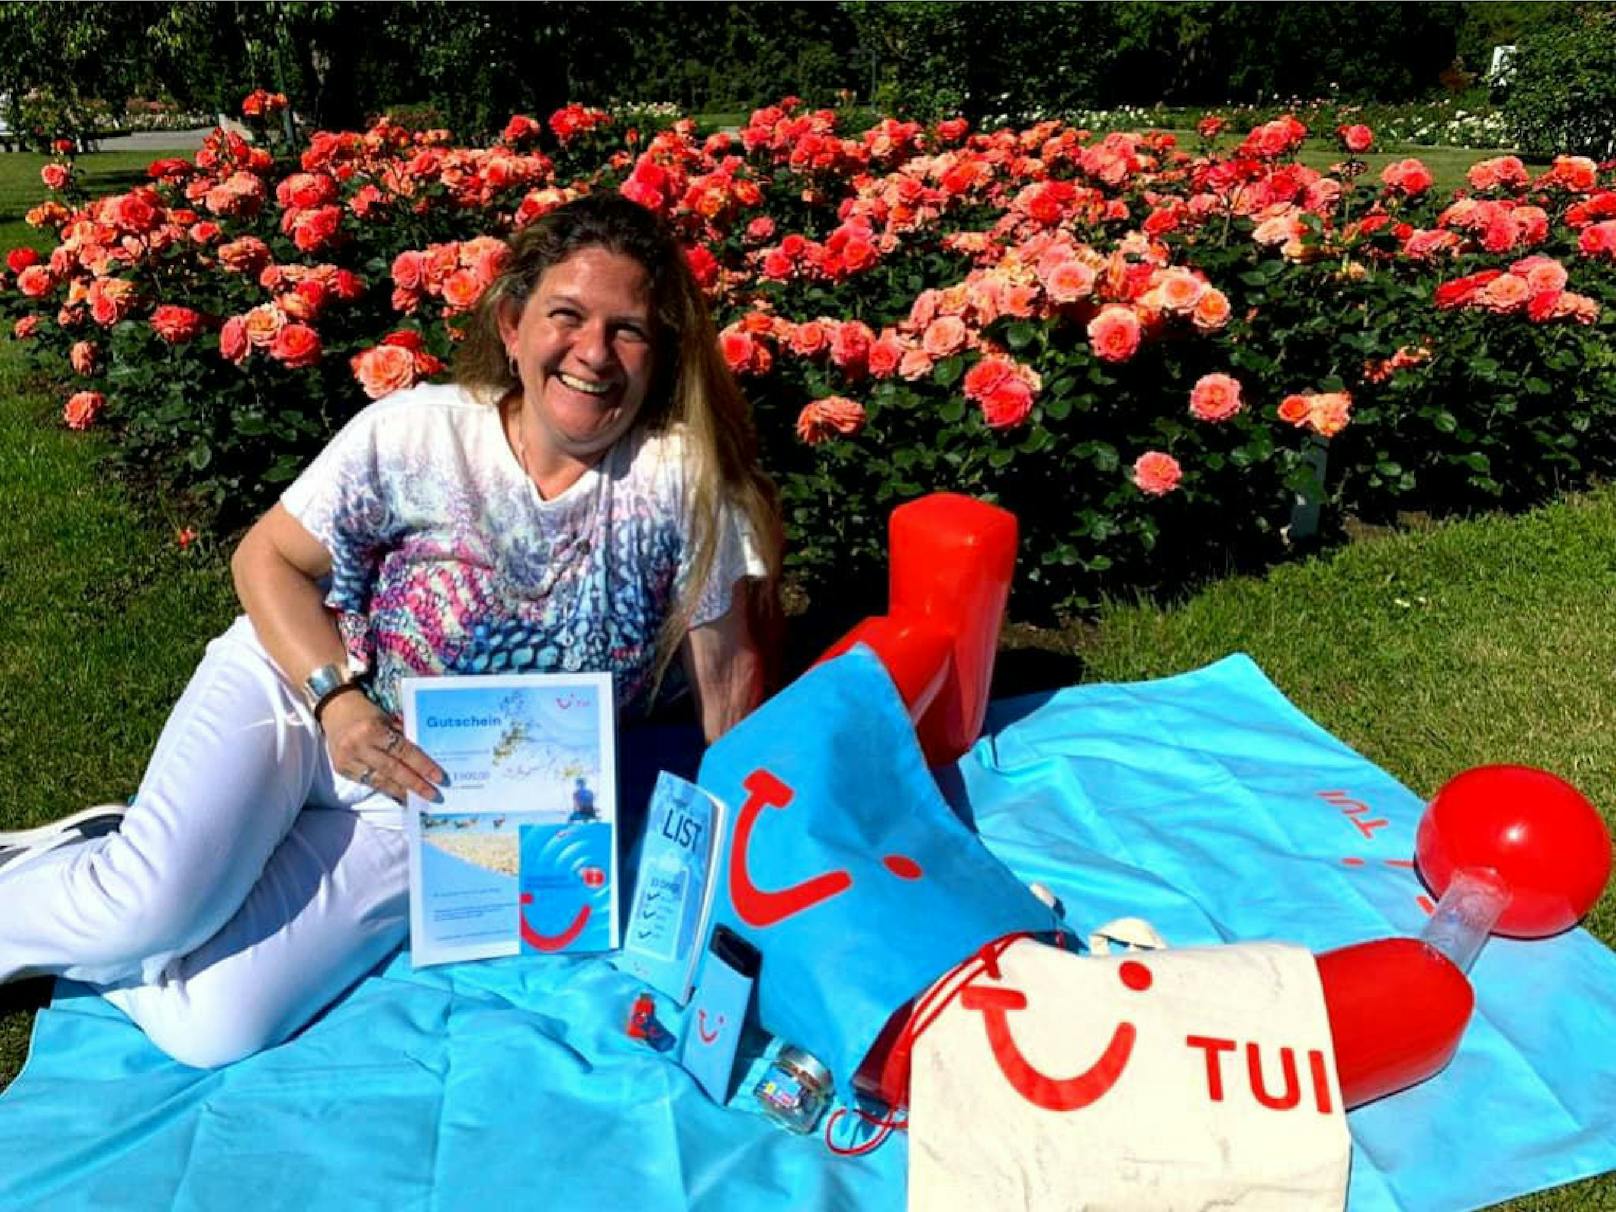 Reisegutschein-Gewinnerin Doris K. aus Bad Vöslau mit ihrem € 3.000,- Reisegutschein von TUI und dem Inhalt des TUI-Goodiebags.